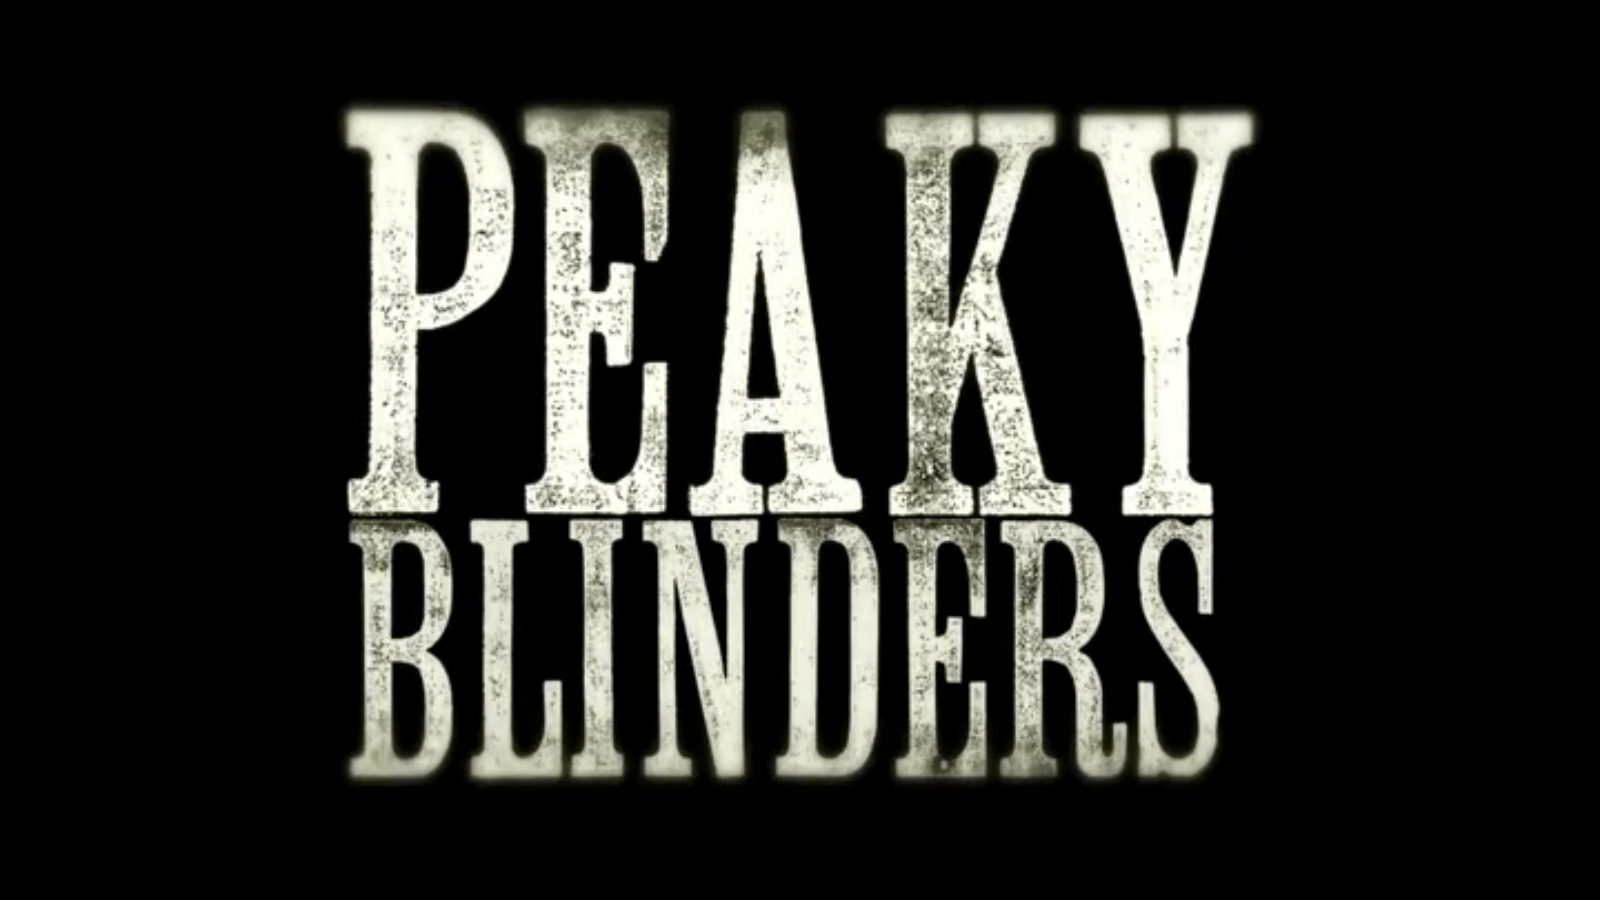 peaky-blinders-poster